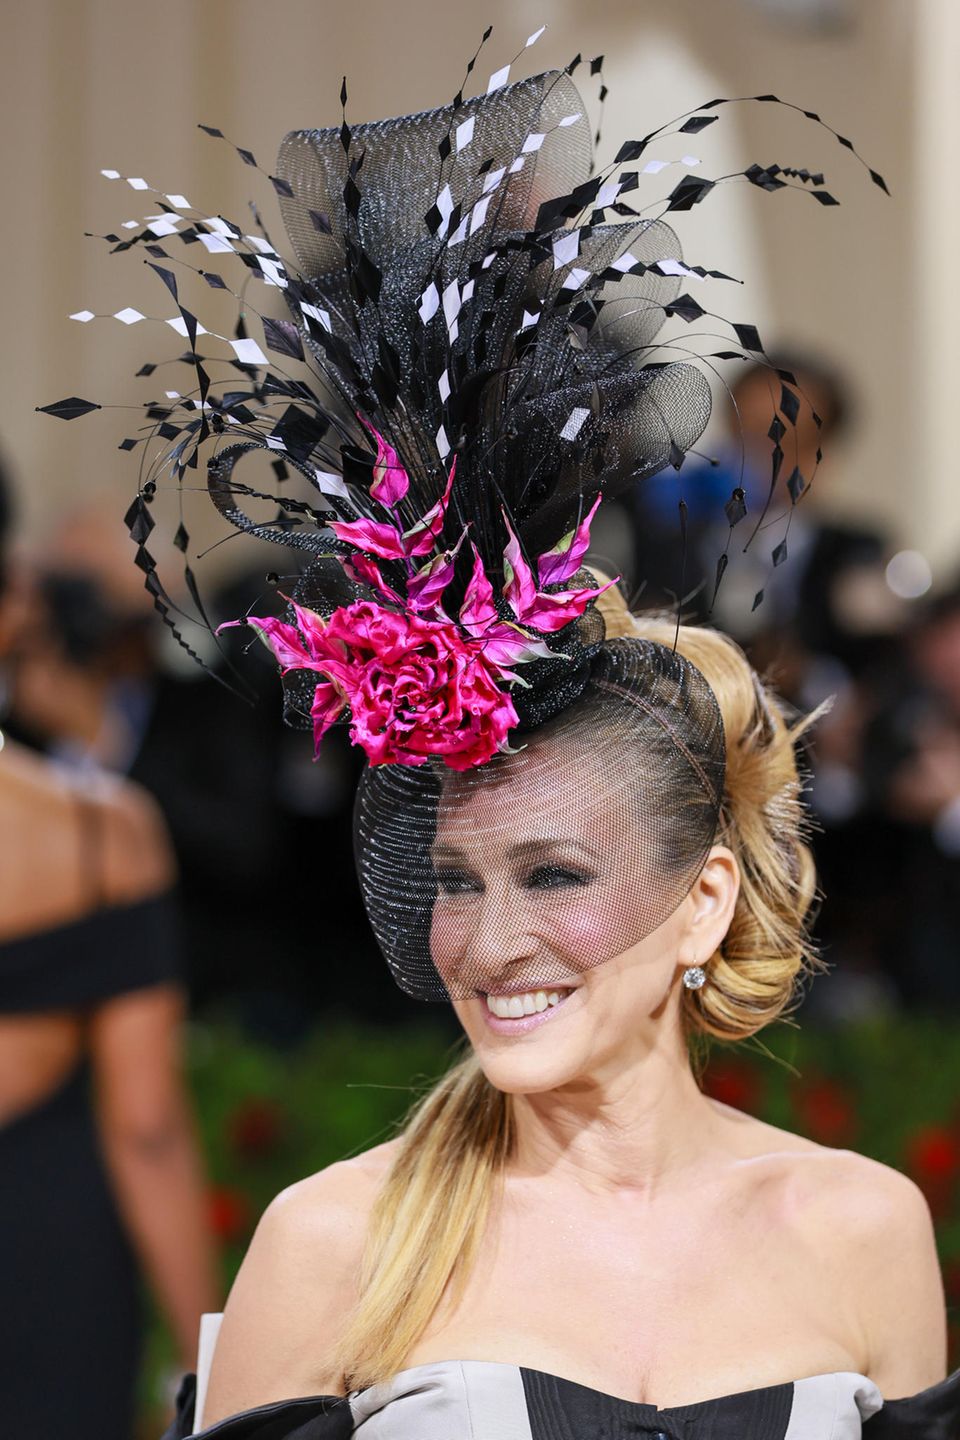 Auf dem Kopf von Schauspielerin Sarah Jessica Parker prangt eine große, pinkfarbene Blume. Doch nicht nur der Hut ist laut und bunt, der Beauty-Look mit Statement-Blush und schwarz umrandeten Augen ist ebenfalls nichts für schüchterne Menschen.